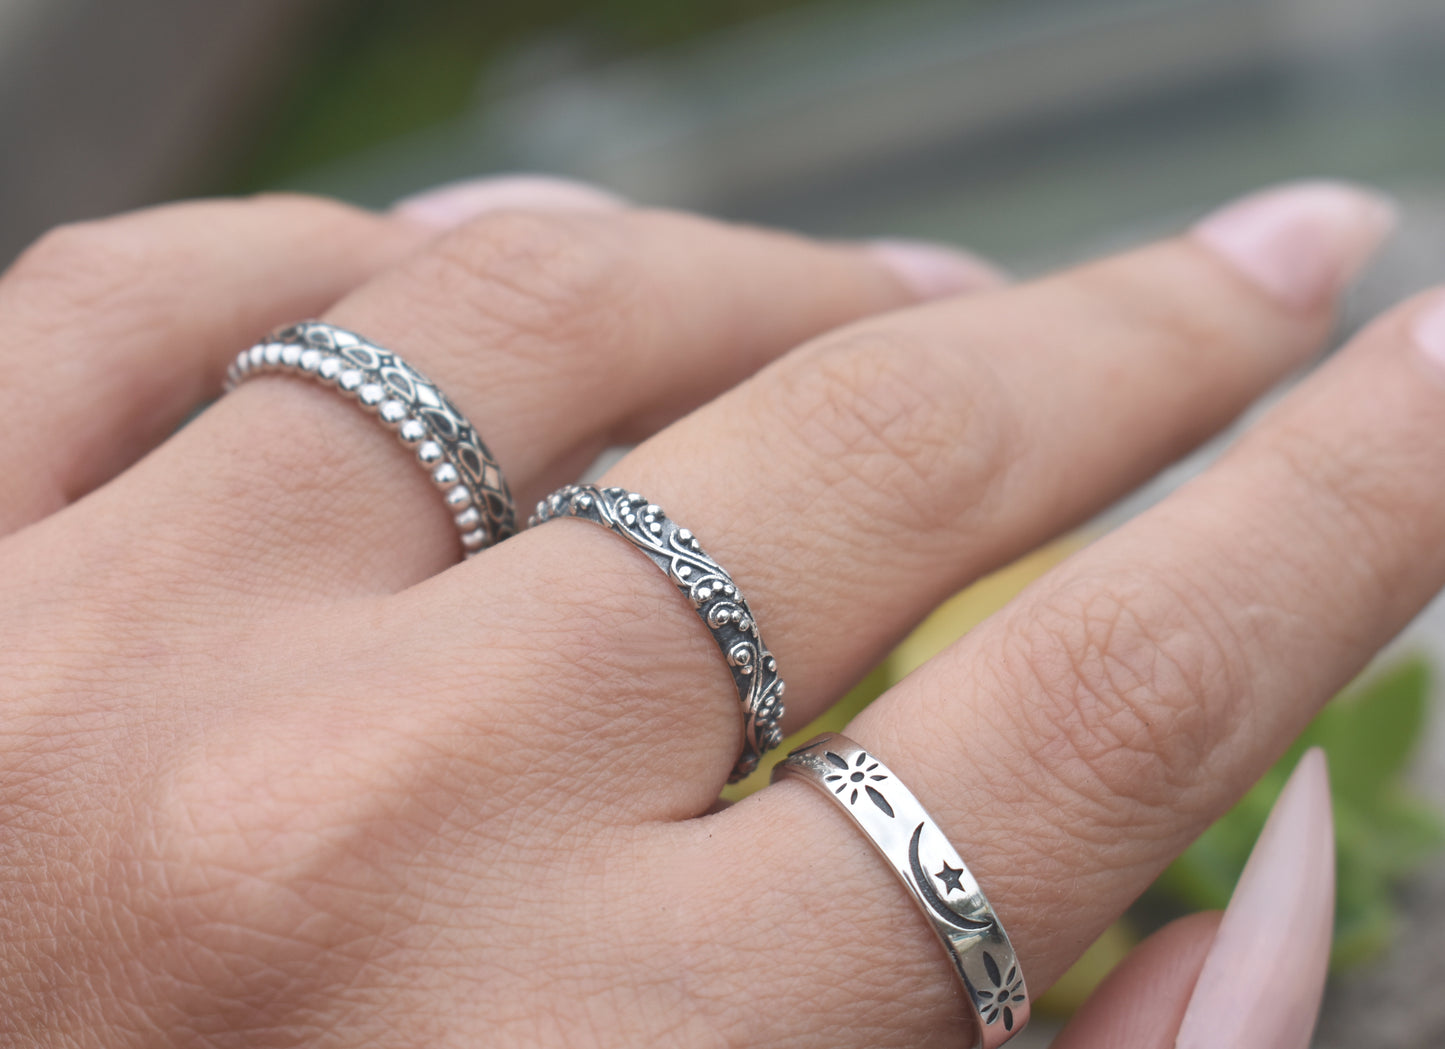 Art Nouveau Ring- Bali Bead Ring, Dot Ring, Stack Ring, Boho Ring- Silver Ring